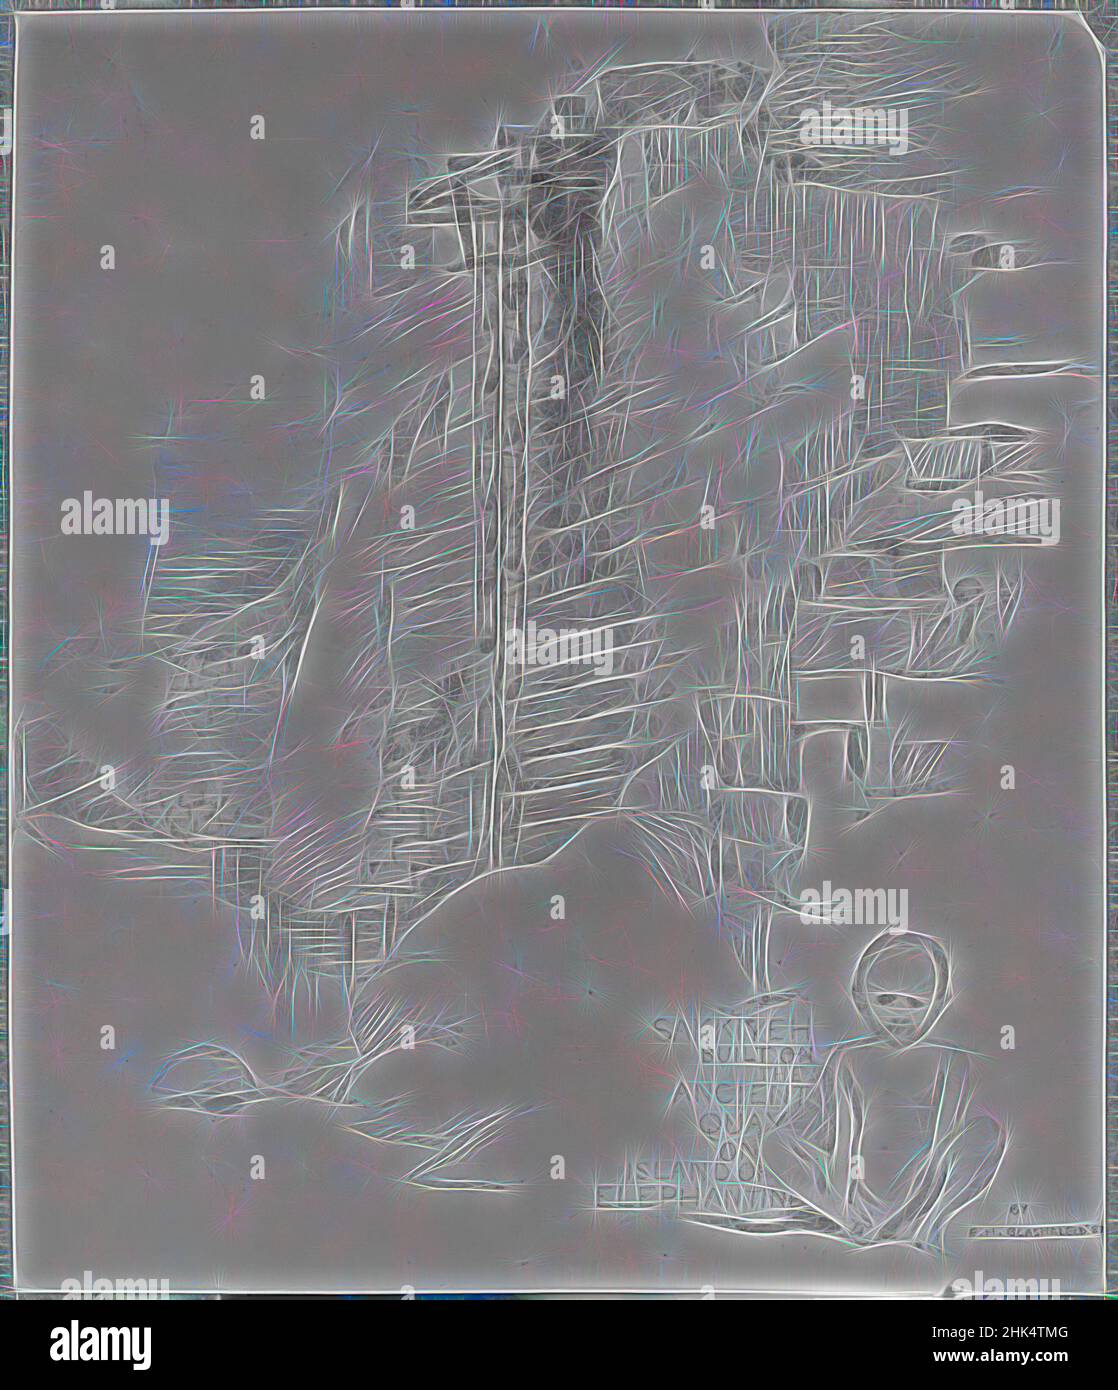 Ispirato da Sakia al Nilometer, Isola di Elefantina, Edwin Howland Blashfield, americano, 1848-1936, Grafite su carta montata su cartone grigio, 1887, foglio: 11 3/4 x 10 1/16 pollici, 29,8 x 25,6 cm, reinventato da Artotop. L'arte classica reinventata con un tocco moderno. Design di calda e allegra luminosità e di raggi di luce. La fotografia si ispira al surrealismo e al futurismo, abbracciando l'energia dinamica della tecnologia moderna, del movimento, della velocità e rivoluzionando la cultura Foto Stock